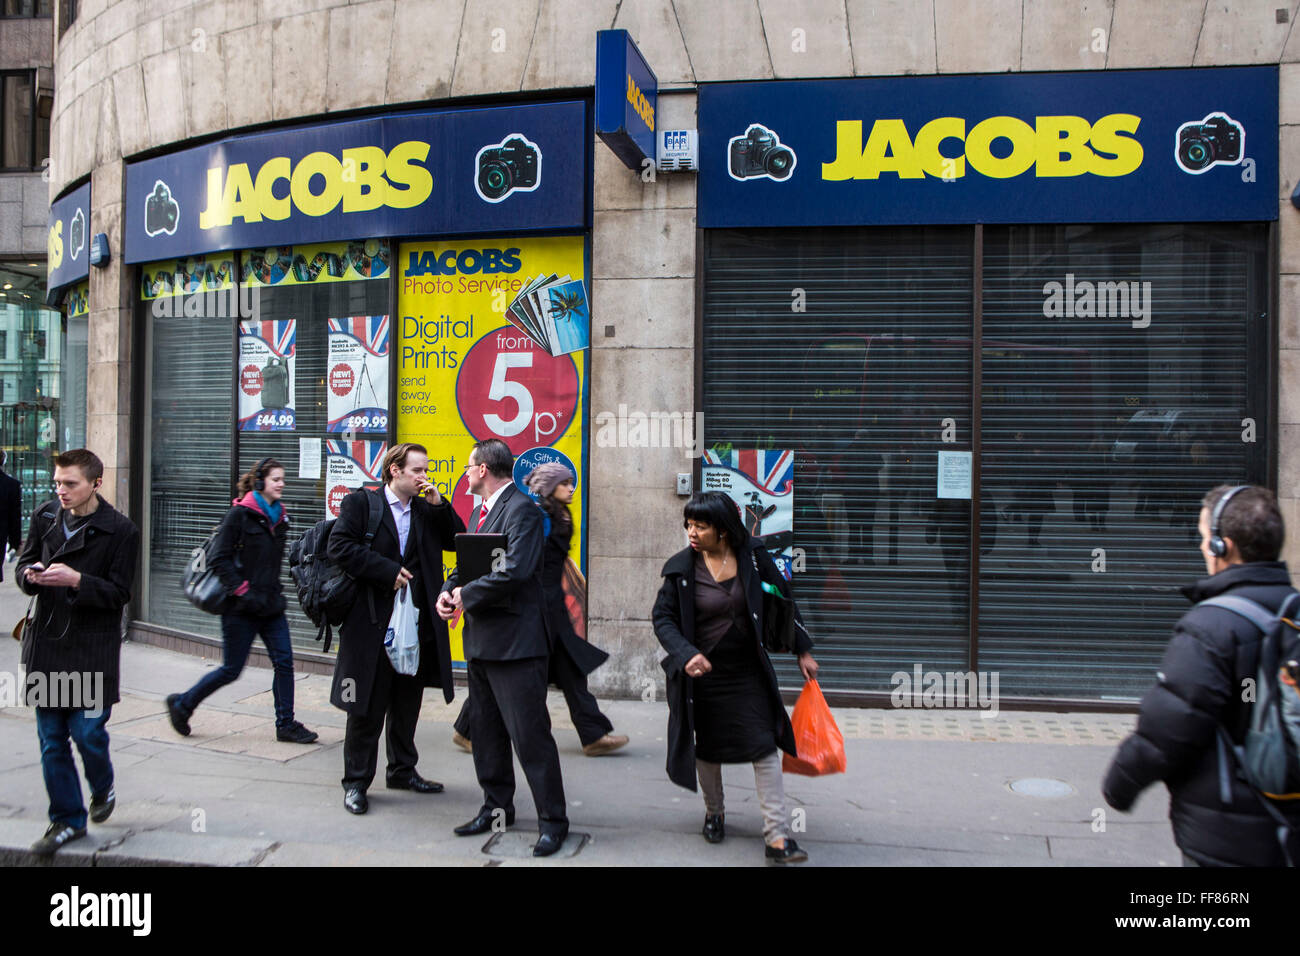 London City Arbeitnehmer gehen vorbei an einem Fotogeschäft Jacobs, die vor kurzem in der Nähe von Bank, London, Vereinigtes Königreich geschlossen hat.  Jacobs, Digital Foto, ein britisches Familienunternehmen, ging in die Verwaltung im Juni 2012.  Das Retail-Geschäft wurde 1939 gegründet, aber wurde ein Opfer der Konjunkturabschwächung, da gab es eine Verschiebung in Richtung Internet-basierte Händler zu kaufen. Stockfoto